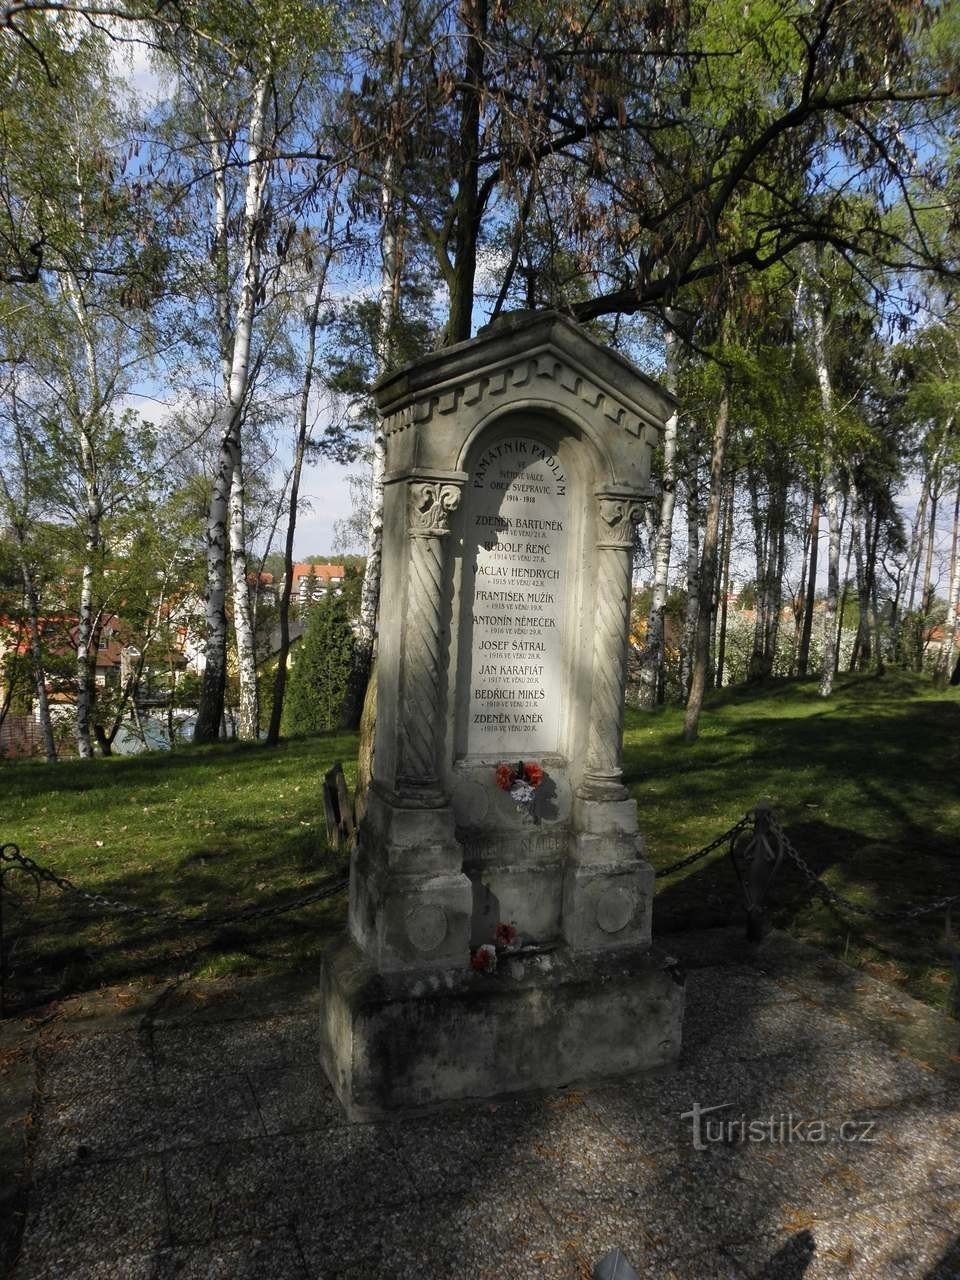 Đài tưởng niệm những người đã ngã xuống trên Đồi Baroňák - 26.4.2010/XNUMX/XNUMX